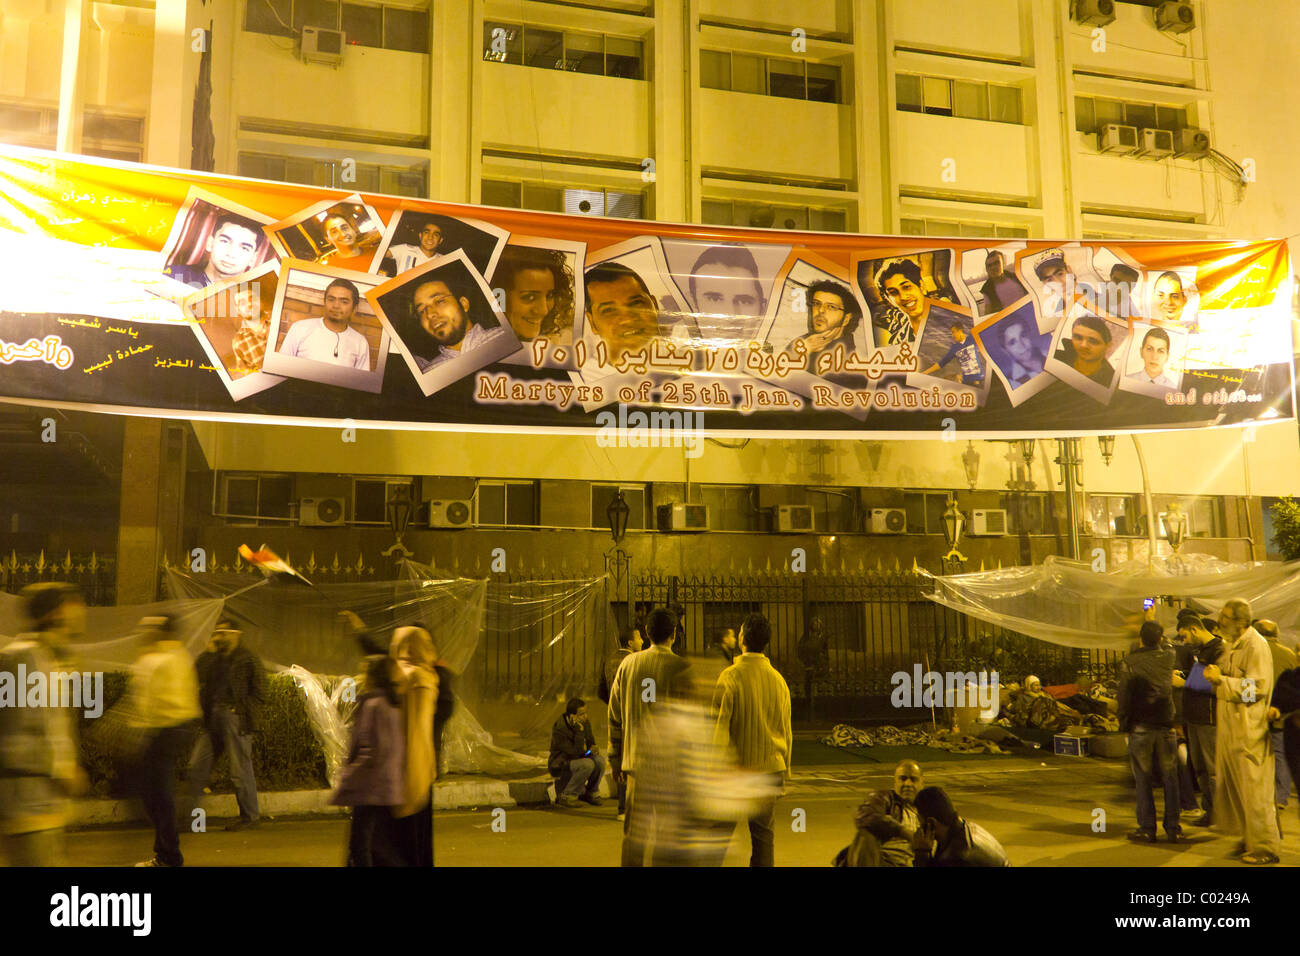 Panneau indiquant les martyrs de la révolution du 25 janvier, près de l'Assemblée du Peuple, près de la place Tahrir, Le Caire, Egypte Banque D'Images